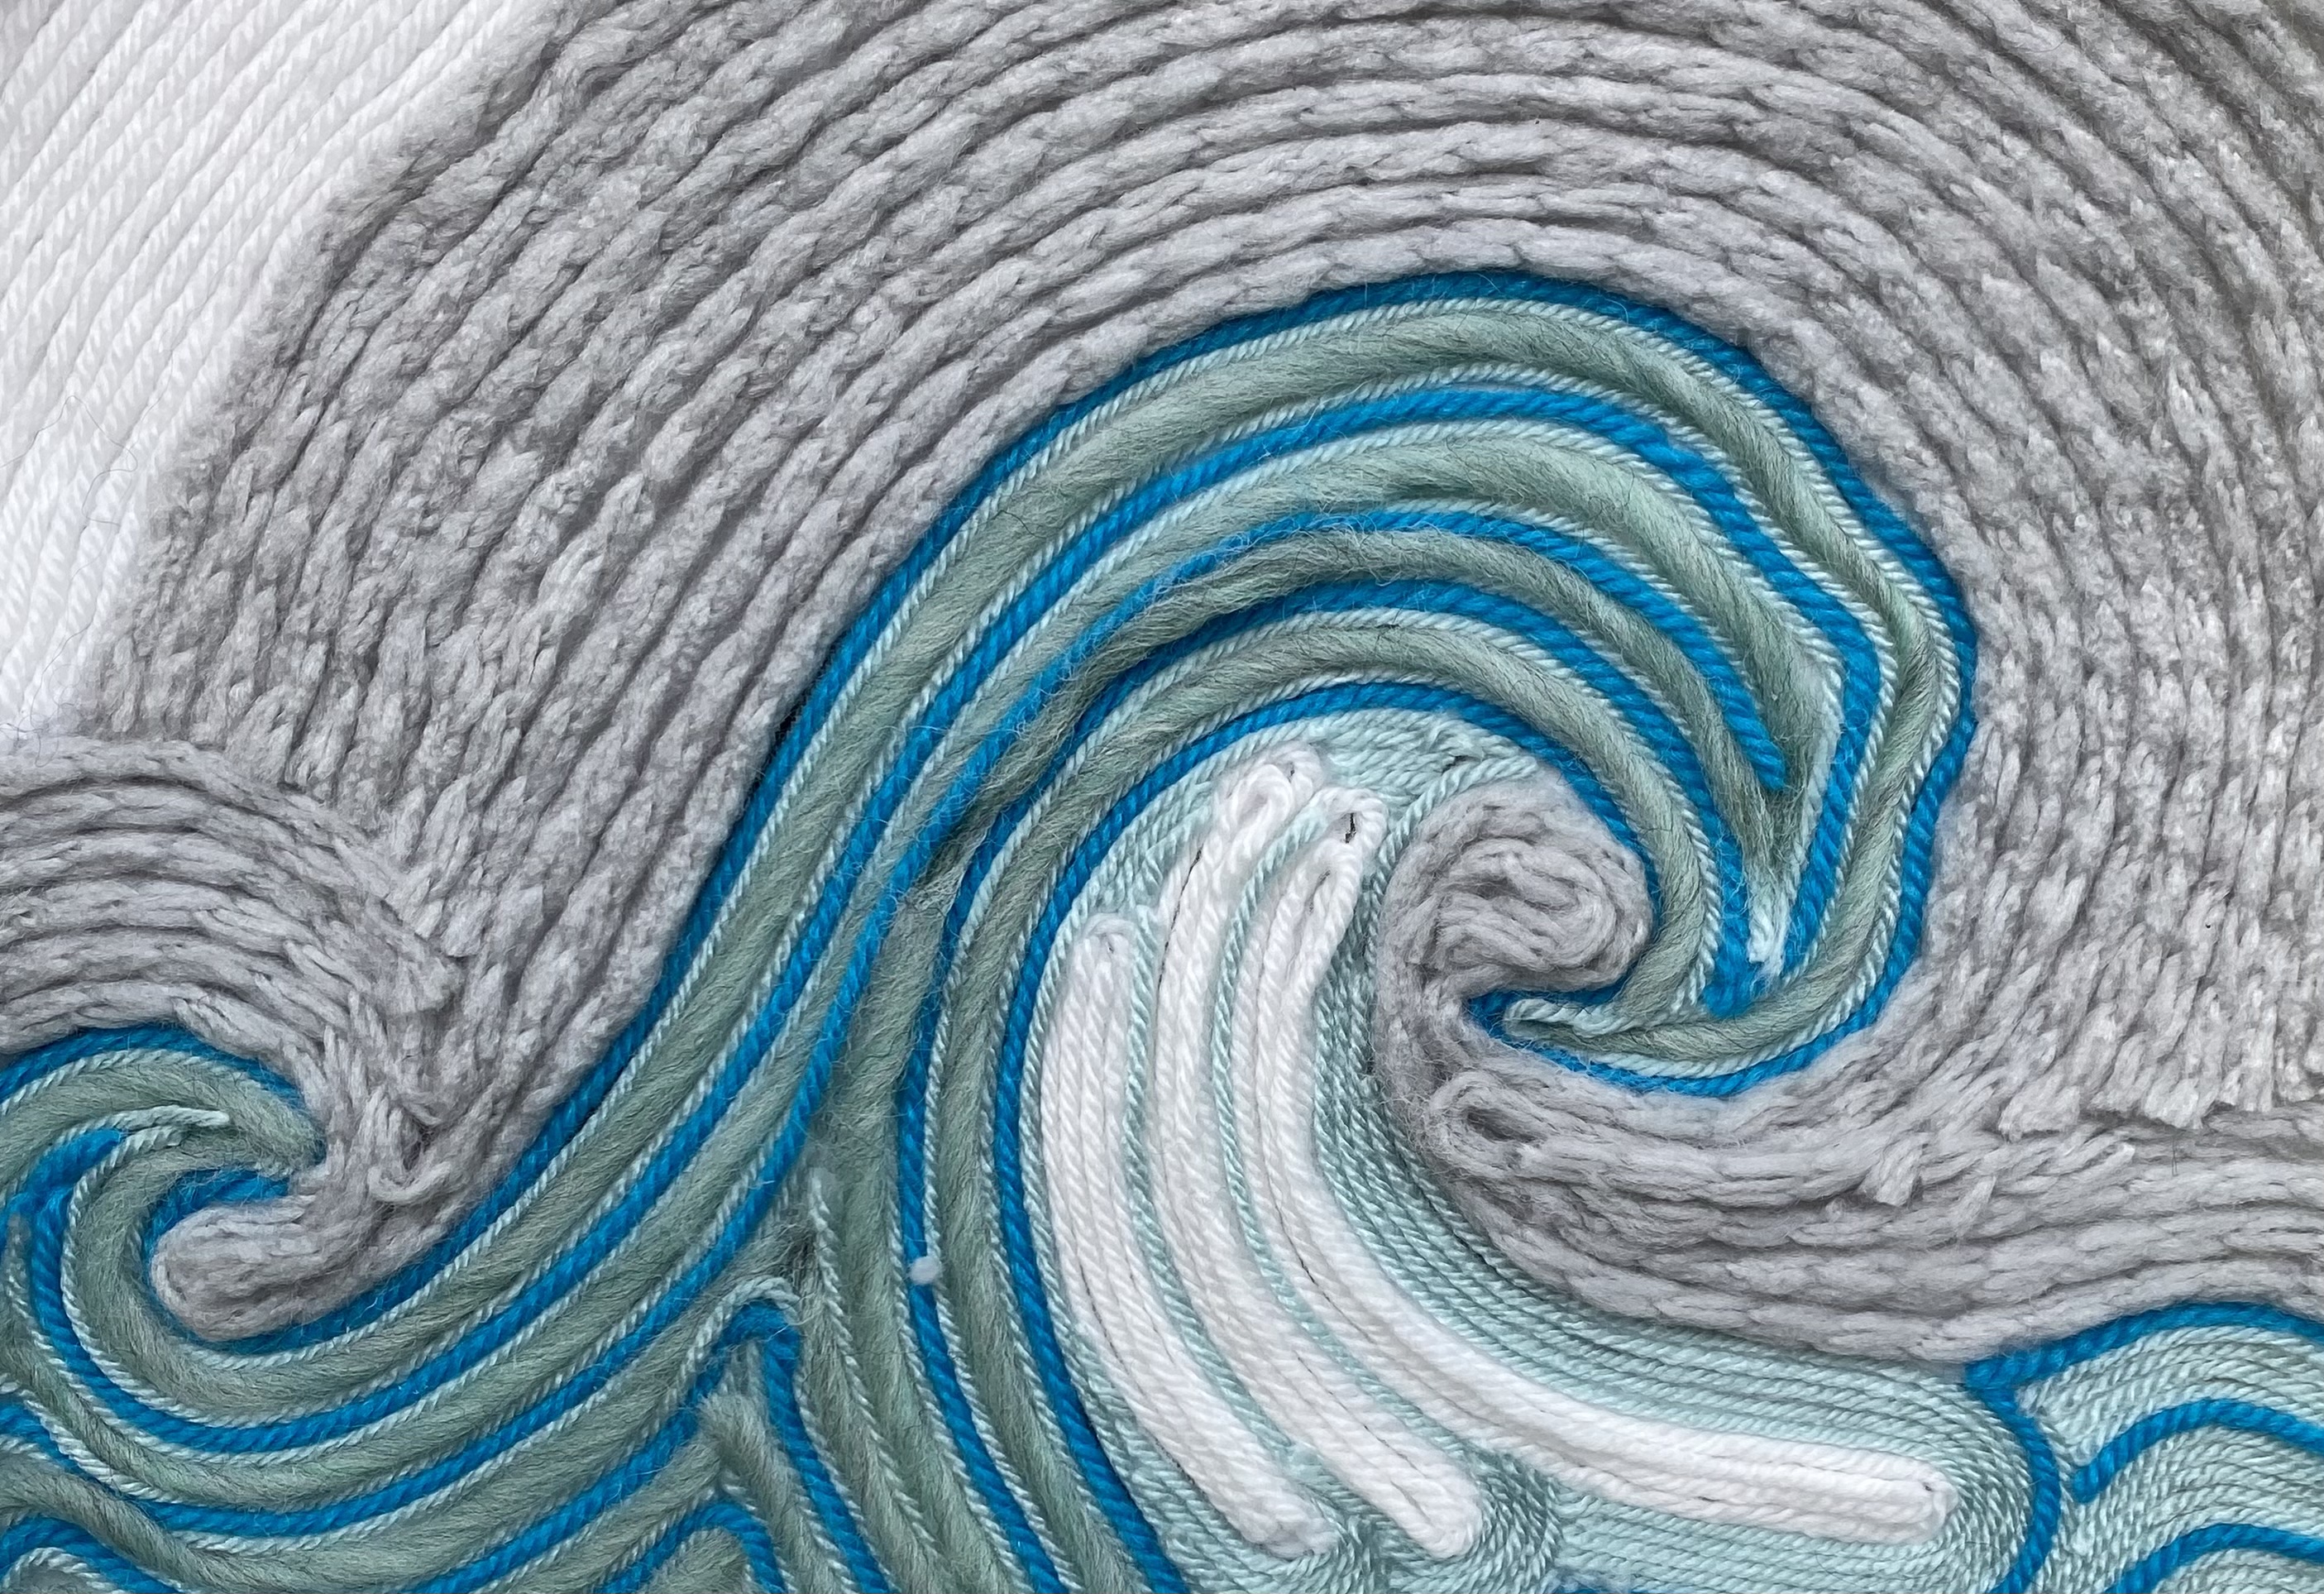 Ocean wave yarn painting